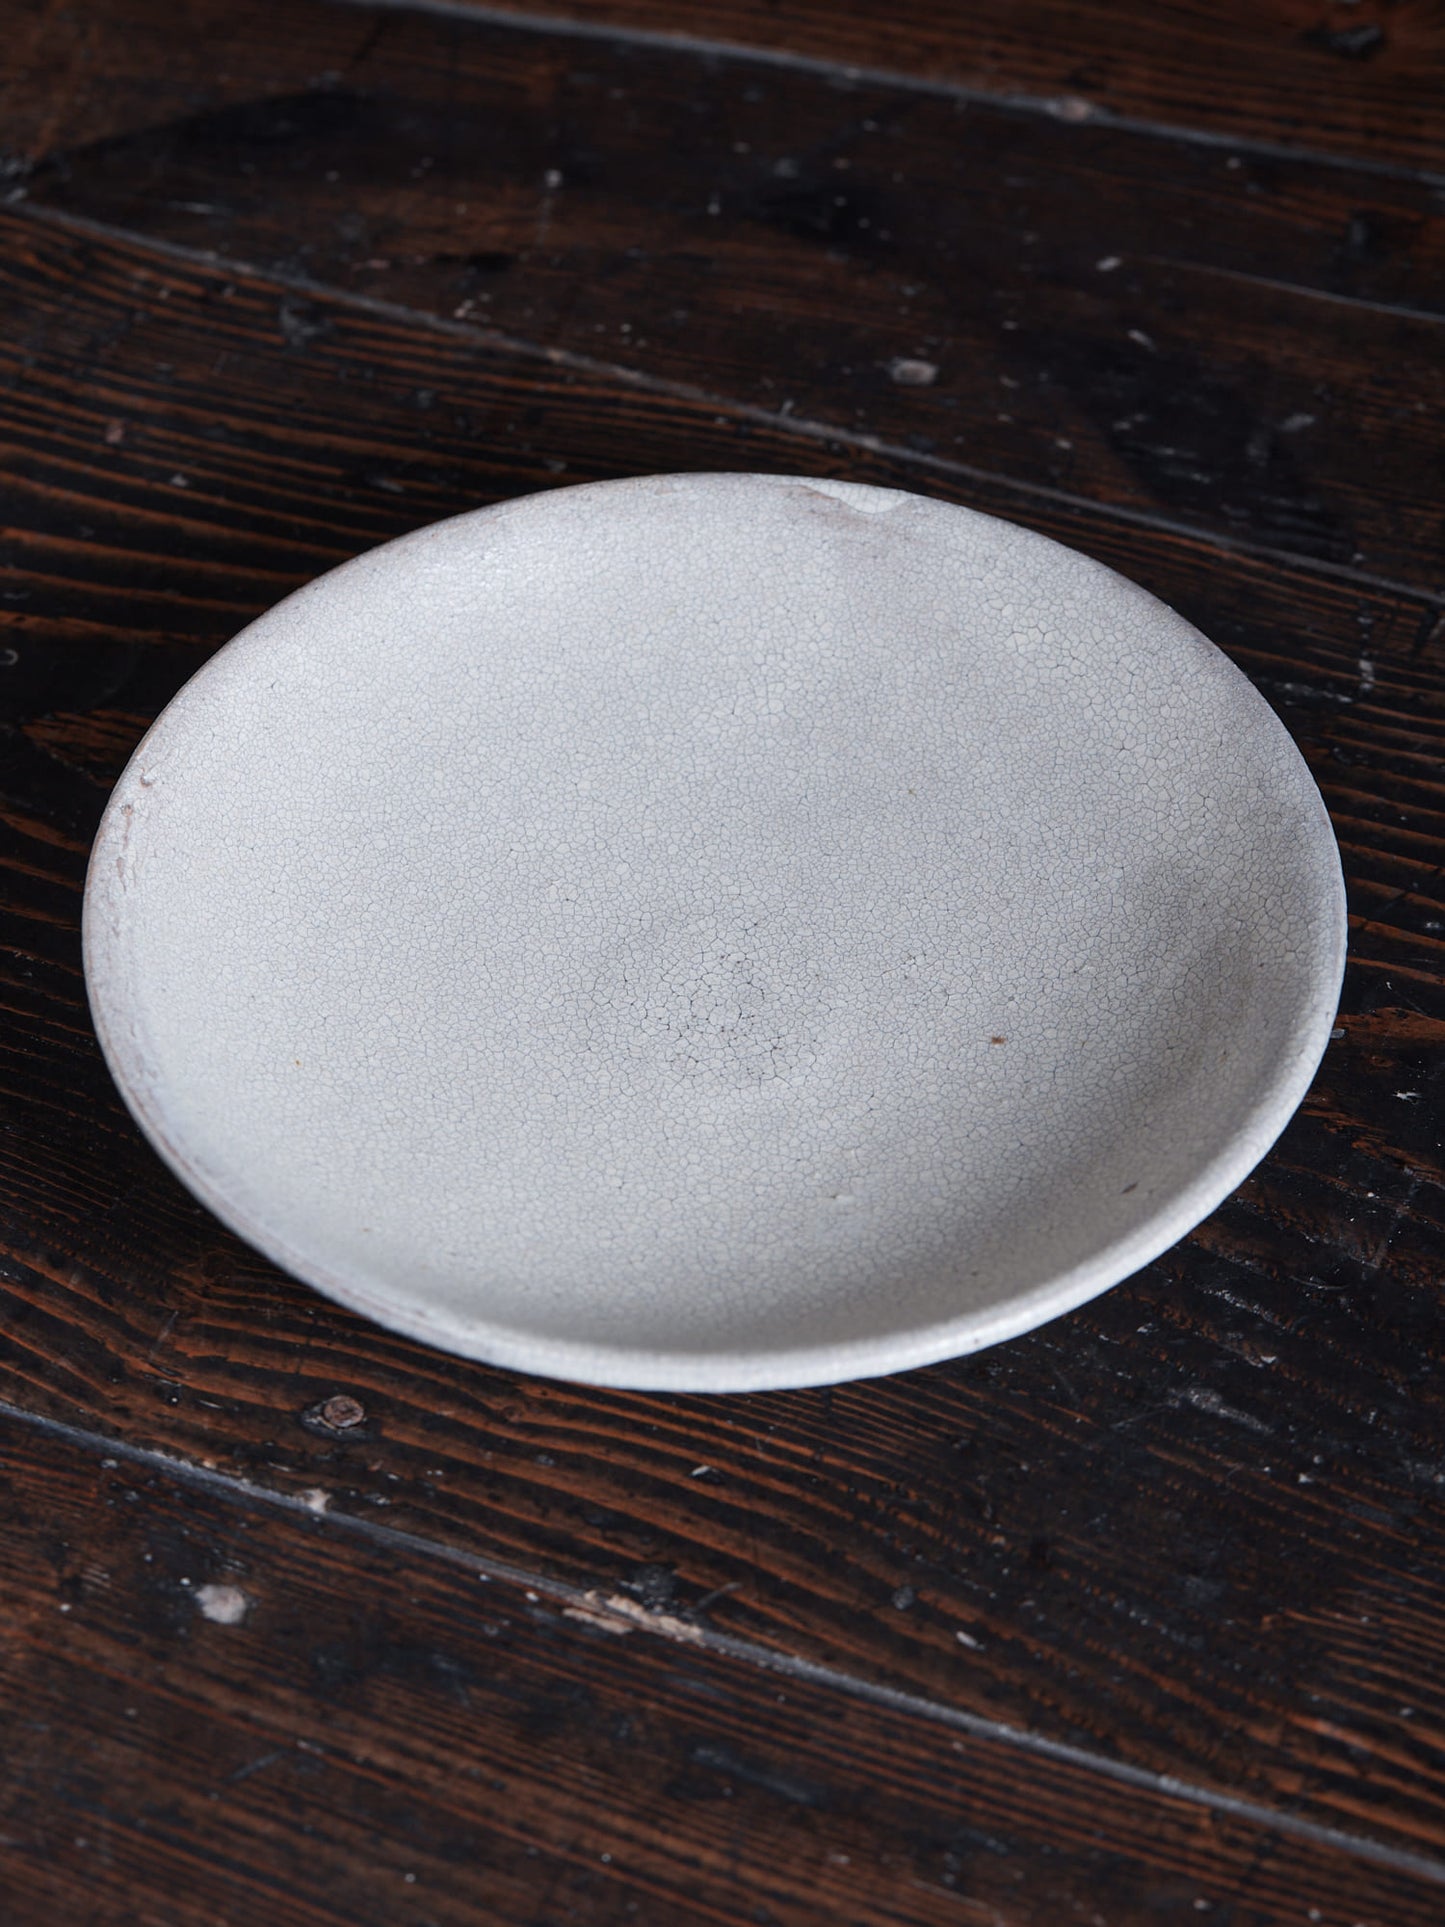 Atsushi Ogata | White Ceramic Plate